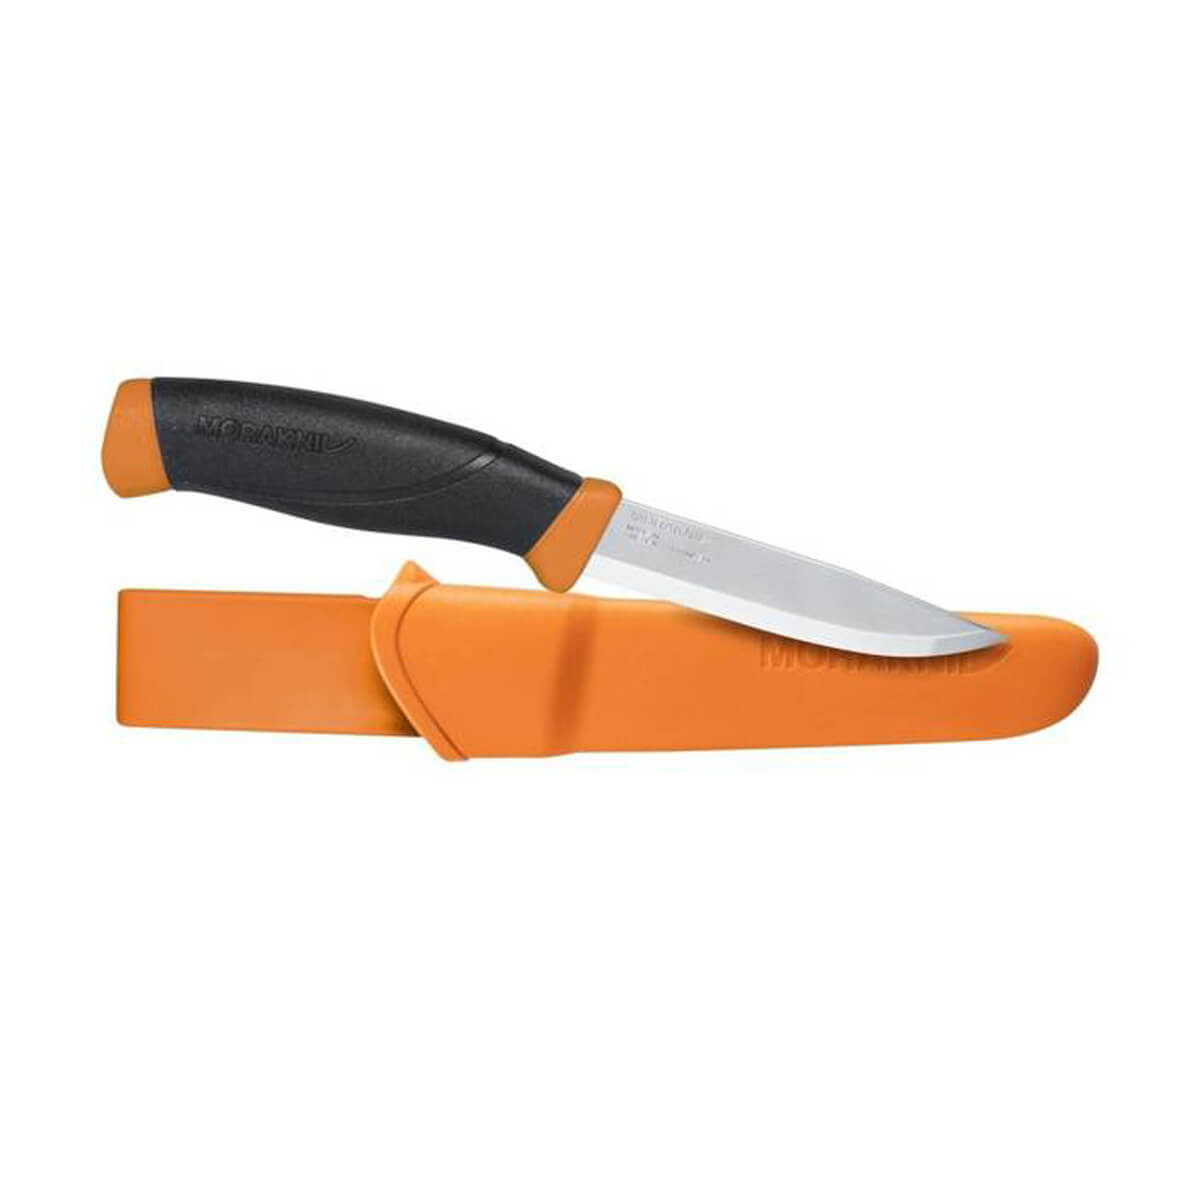 Mora Companion Knife - Orange